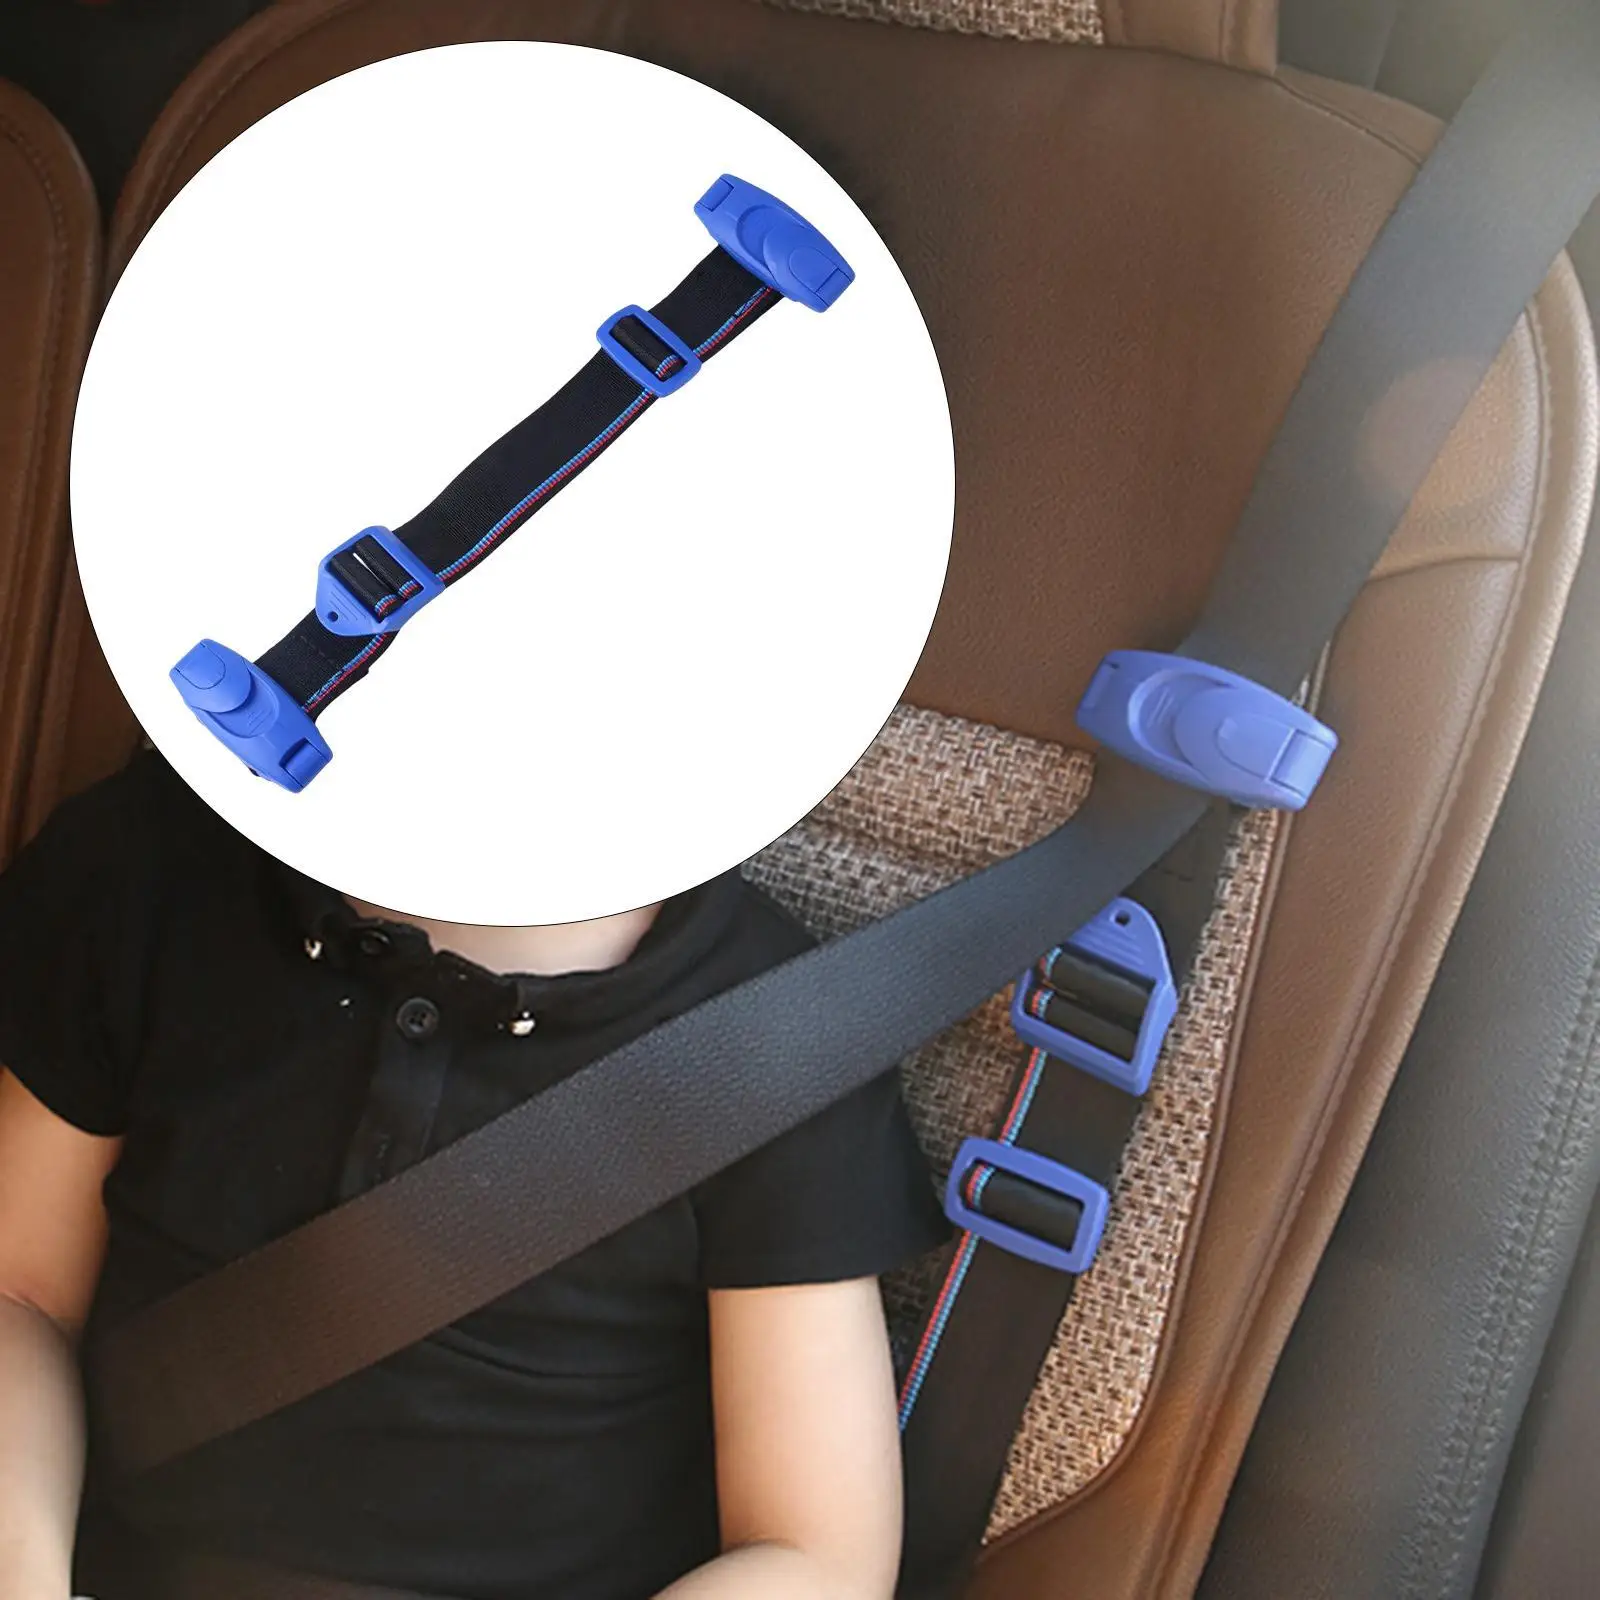 

Car Seat Safety Belt Clip Buckle Seatbelt Comfort Shoulder Neck Strap Adjuster Fixing Device Protection For Child Baby Kids